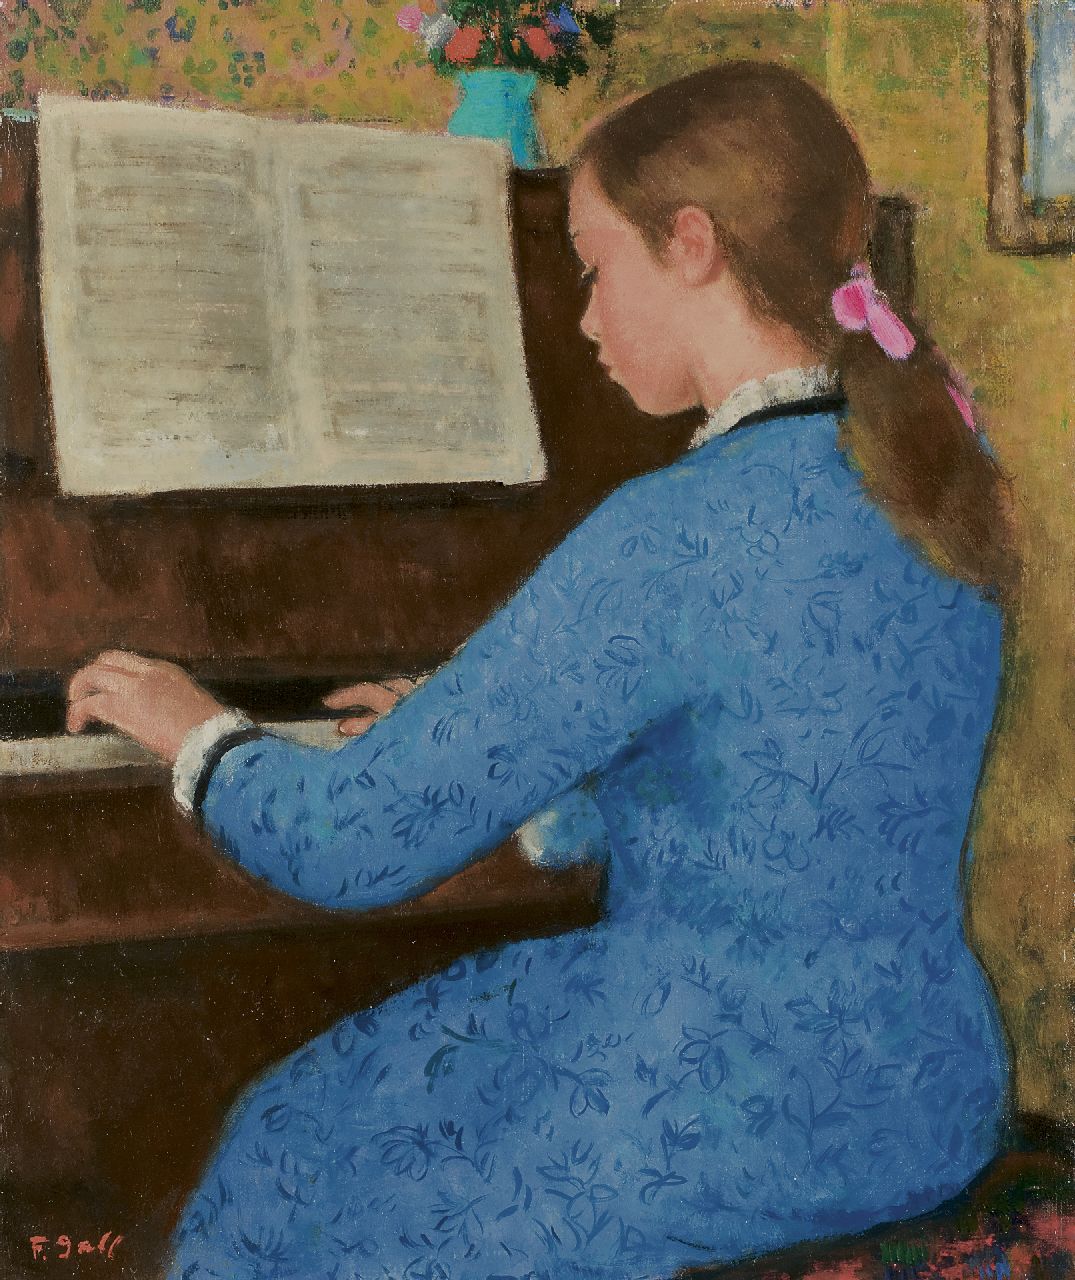 Gall F.  | Ferenç 'François' Gall | Schilderijen te koop aangeboden | Elizabeth-Anne Gall achter de piano, olieverf op doek 46,1 x 38,2 cm, gesigneerd linksonder